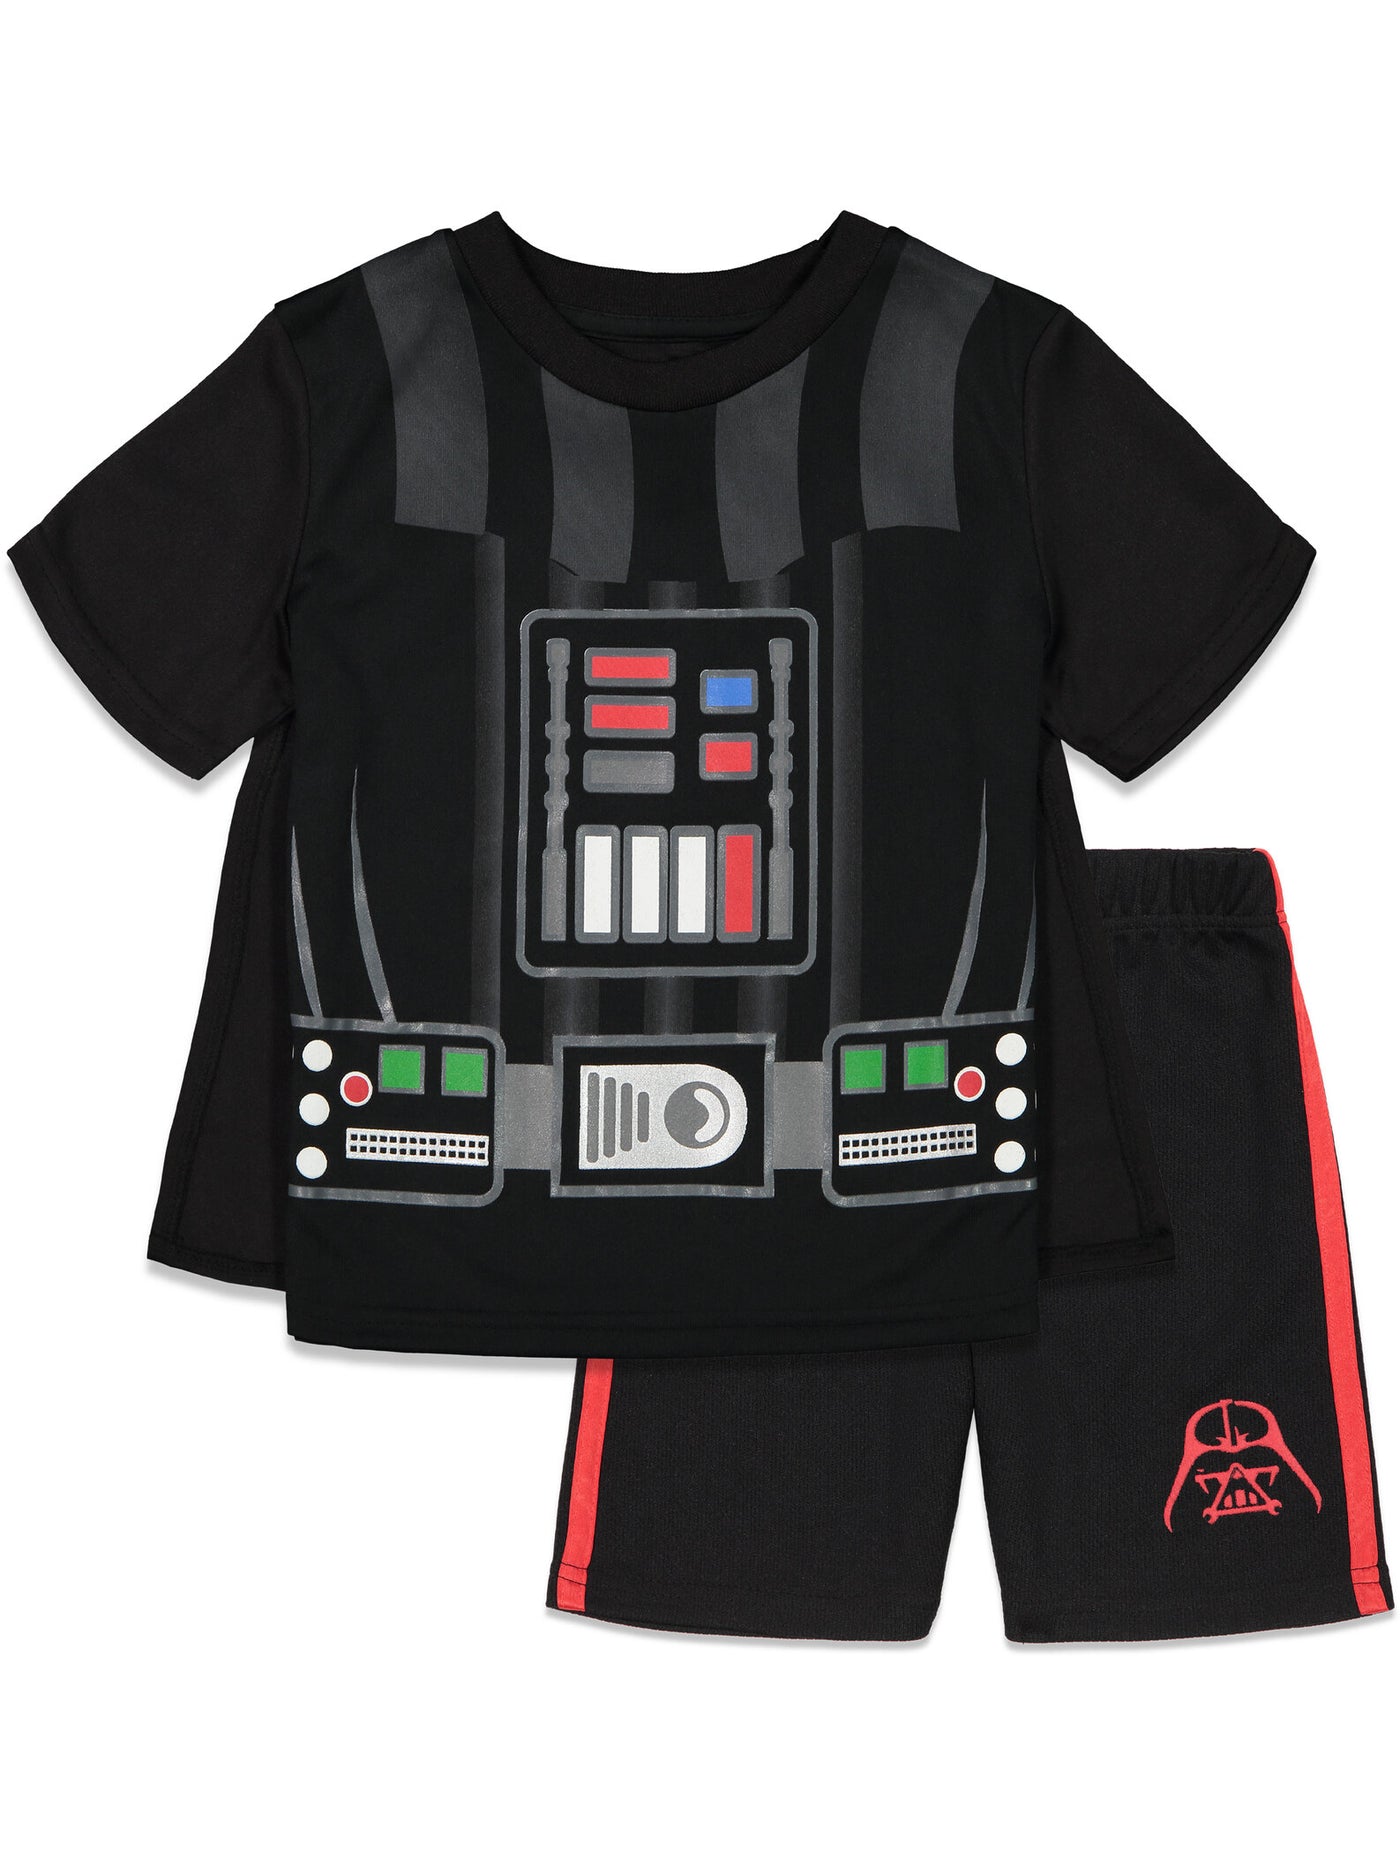 Star Wars Darth Vader Caped T-Shirt & Shorts Set